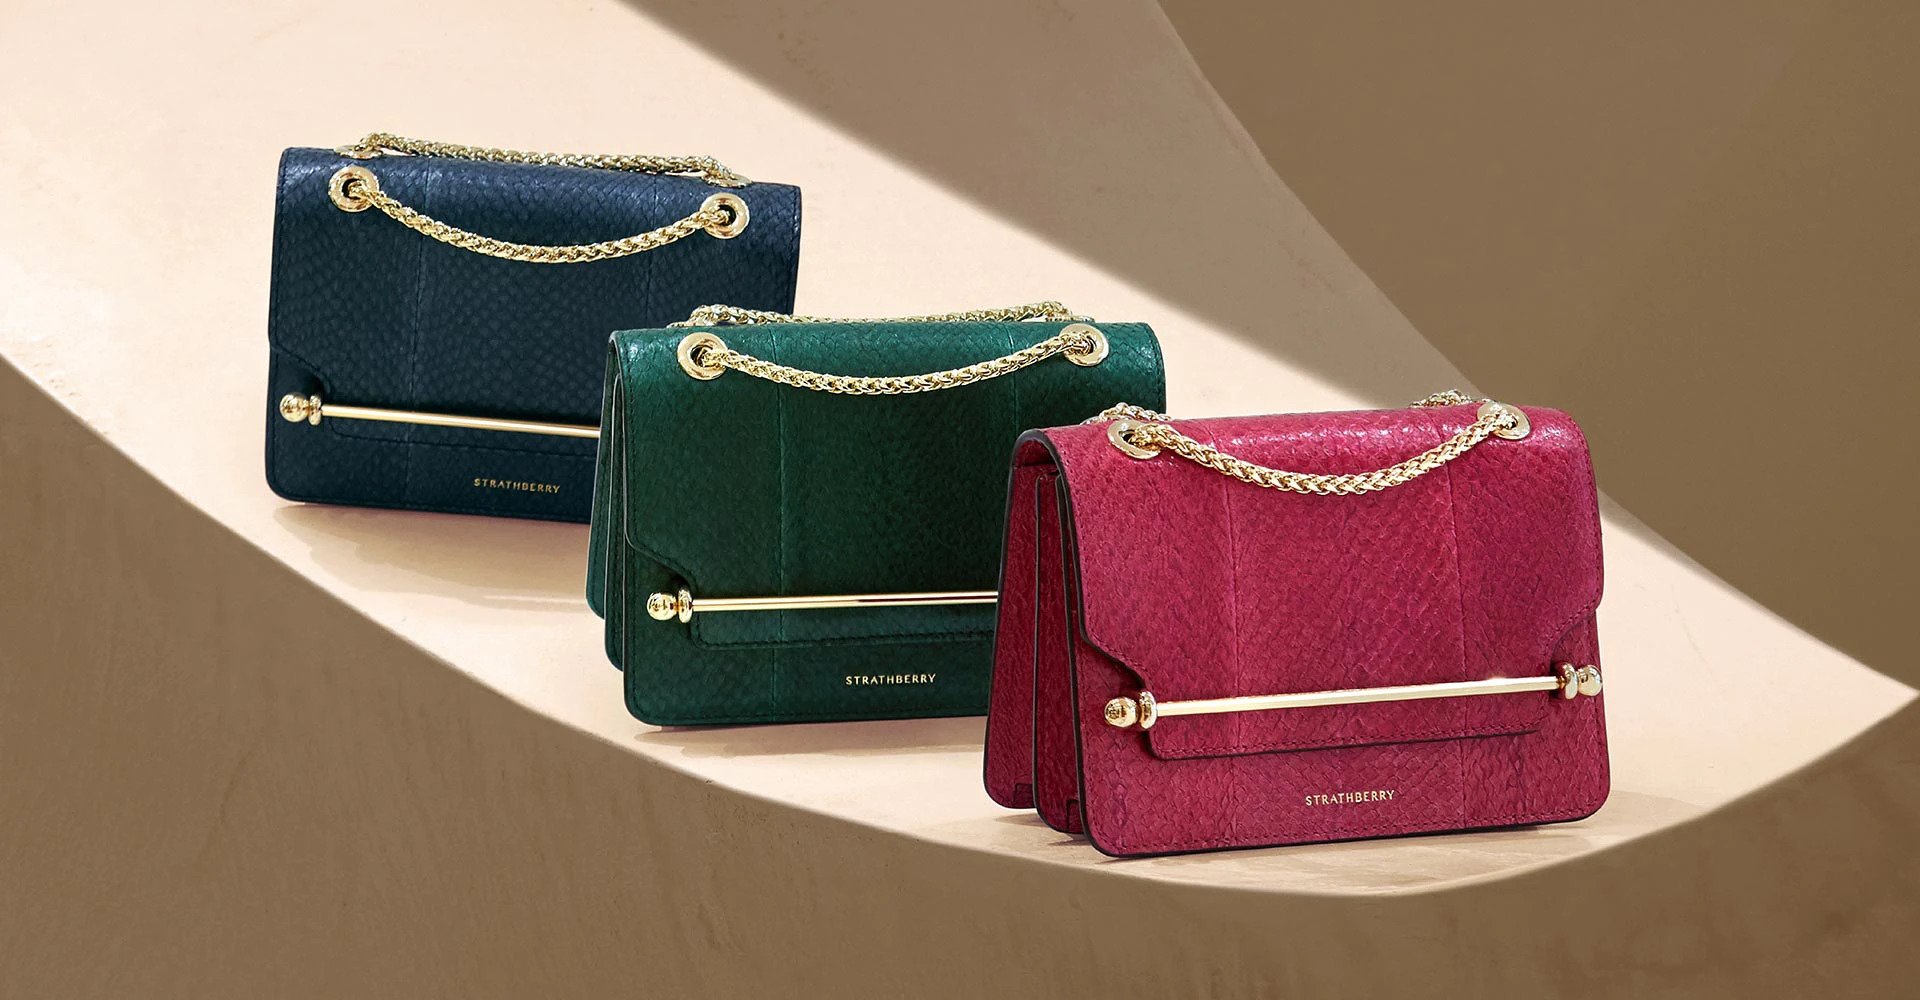 Strathberry, The Strathberry Designer Handbag Collection